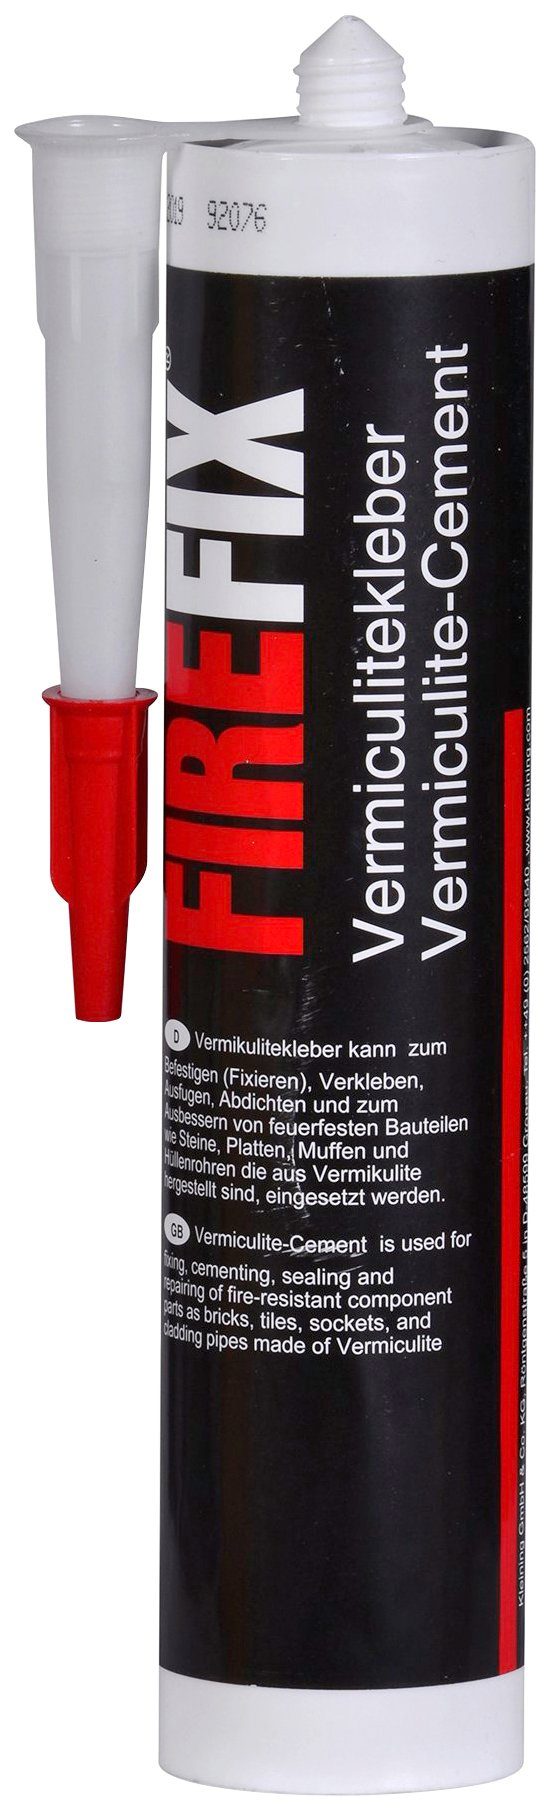 Firefix Klebstoff Schamottekleber, 310 ml Kartusche